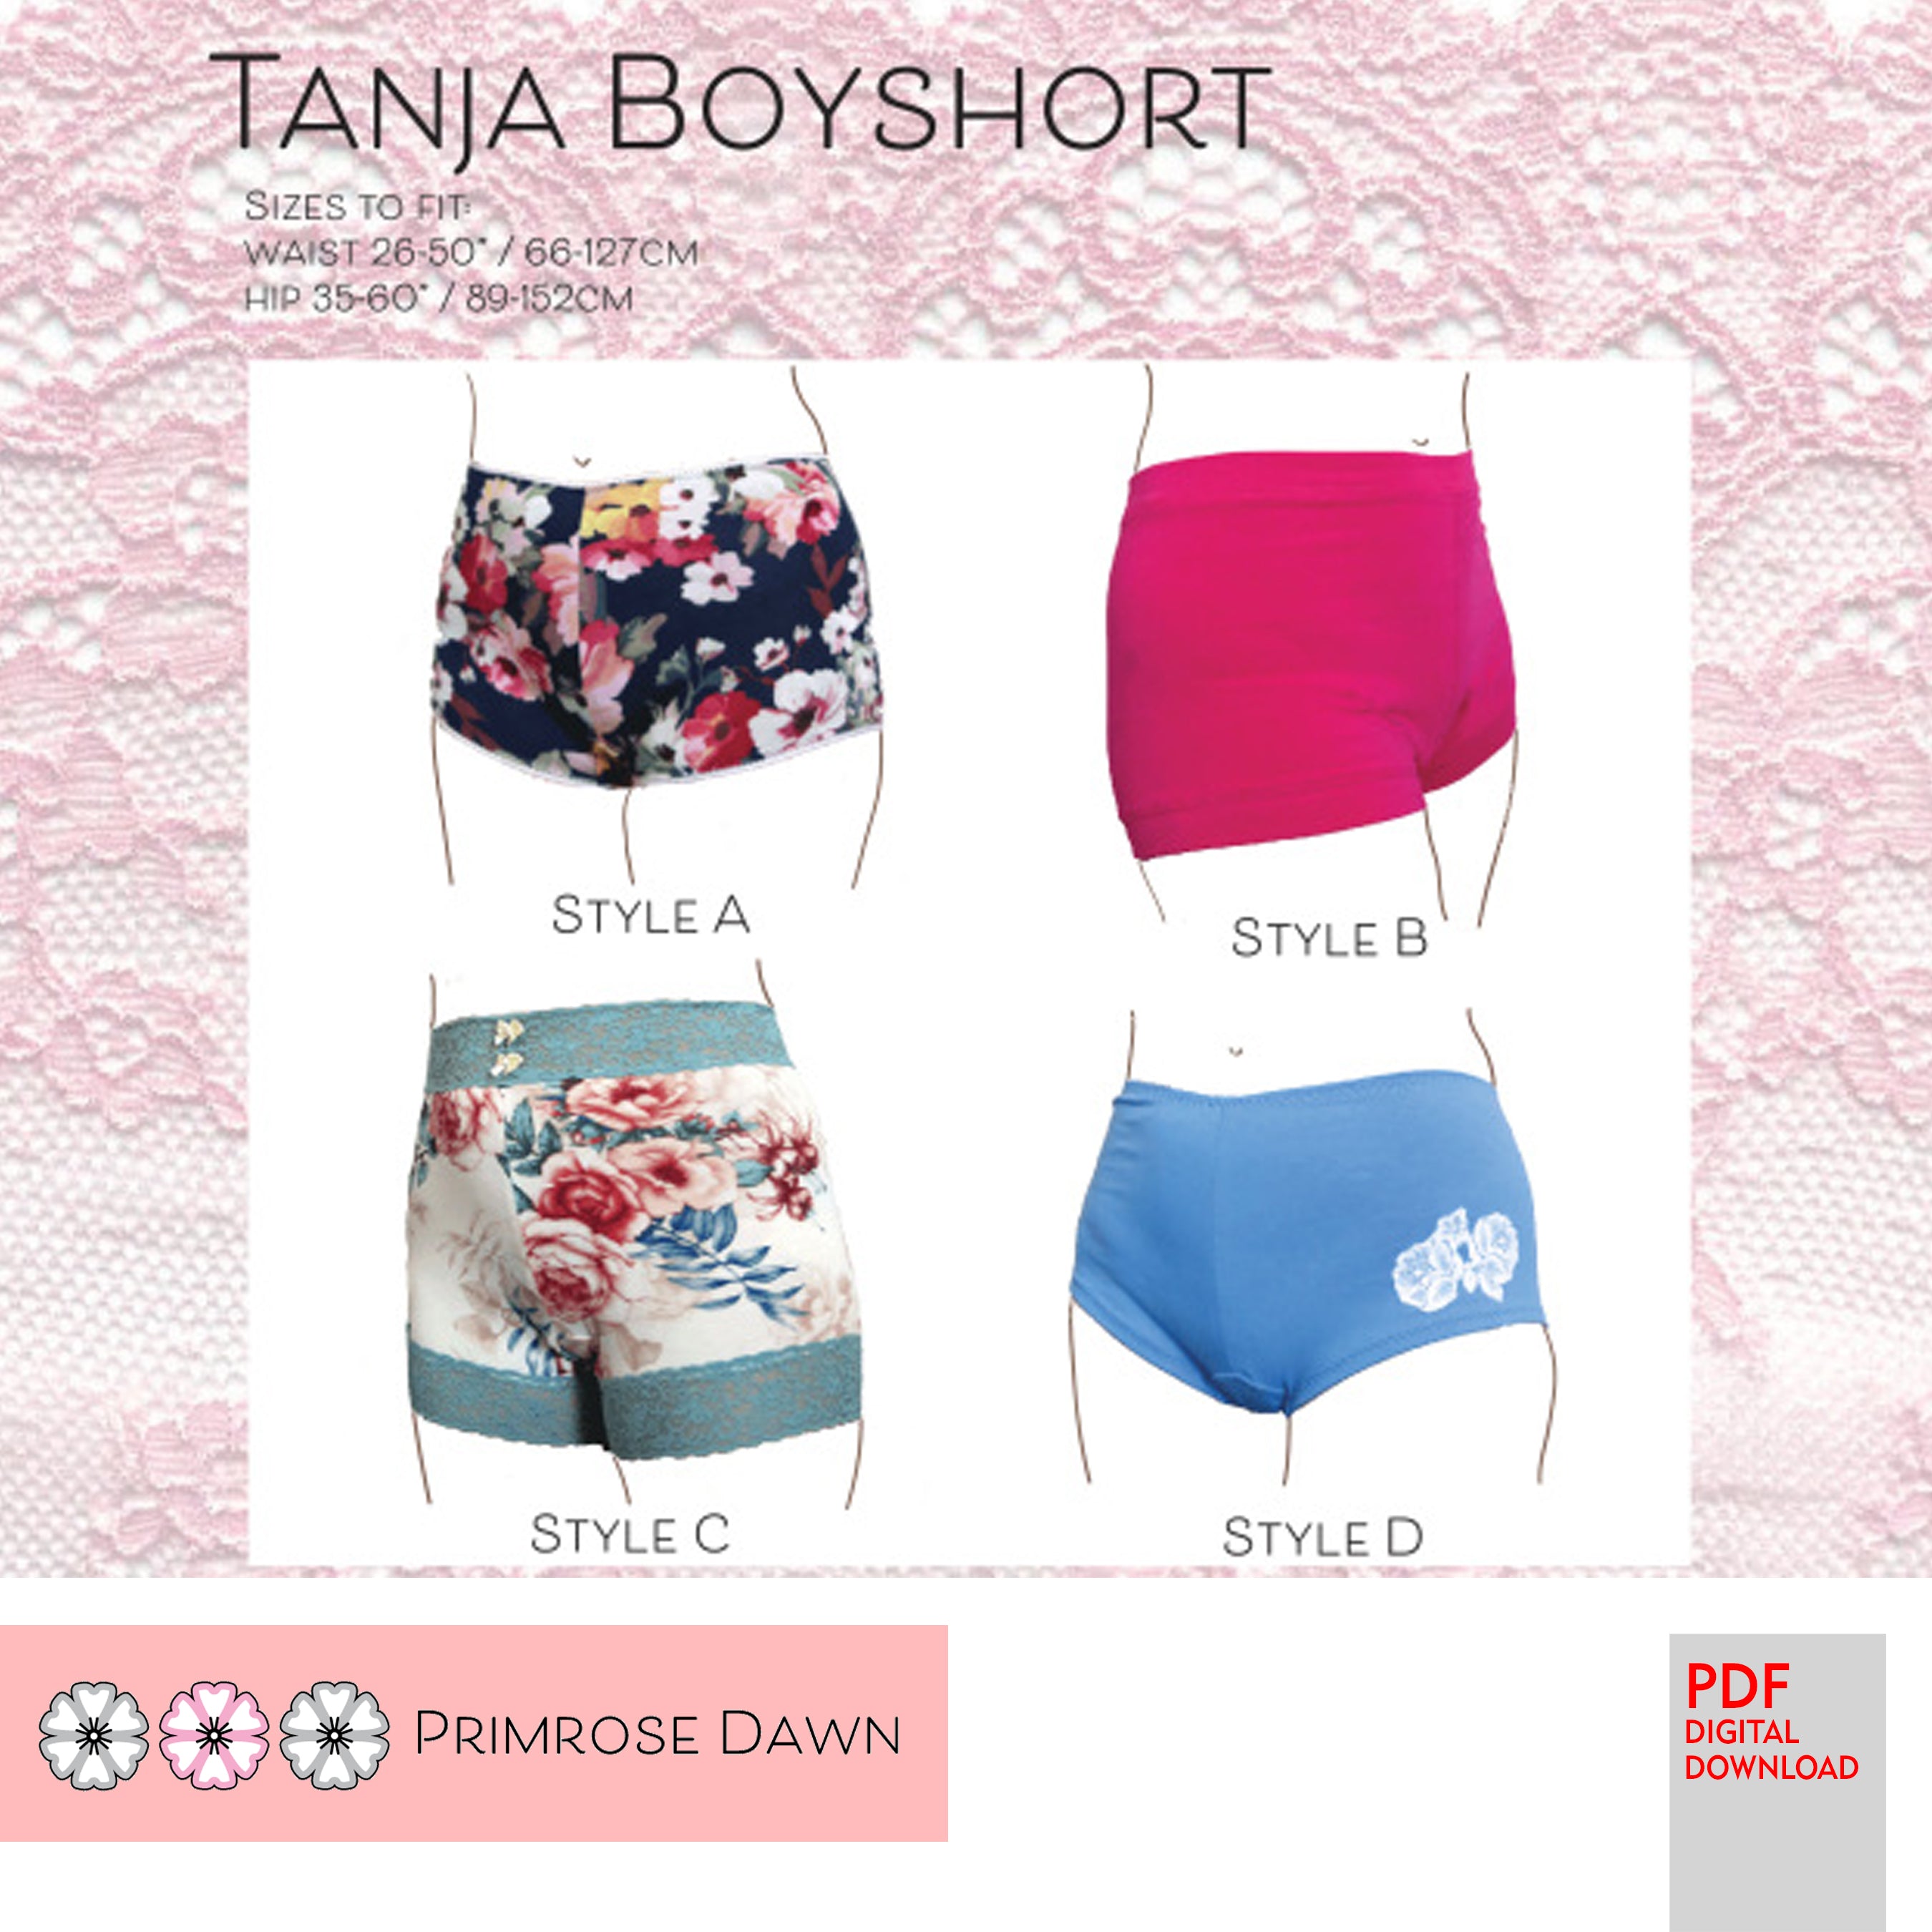 PDF Primrose Dawn Sewing Pattern- Tanja Boyshort